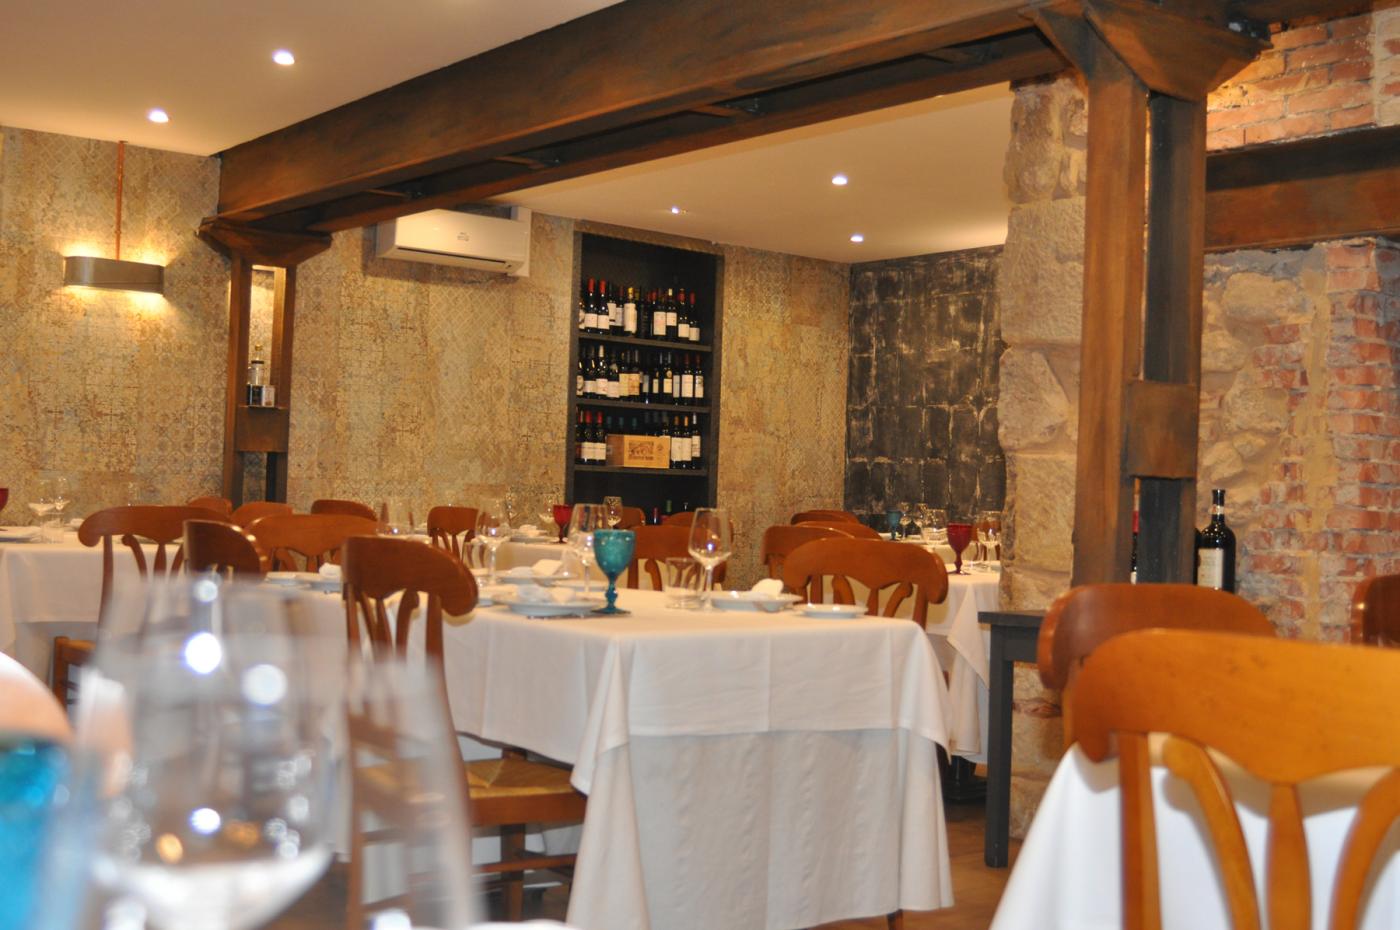 Restaurante Casa Augusto Arranz: Vista interior y decoración del Restaurante